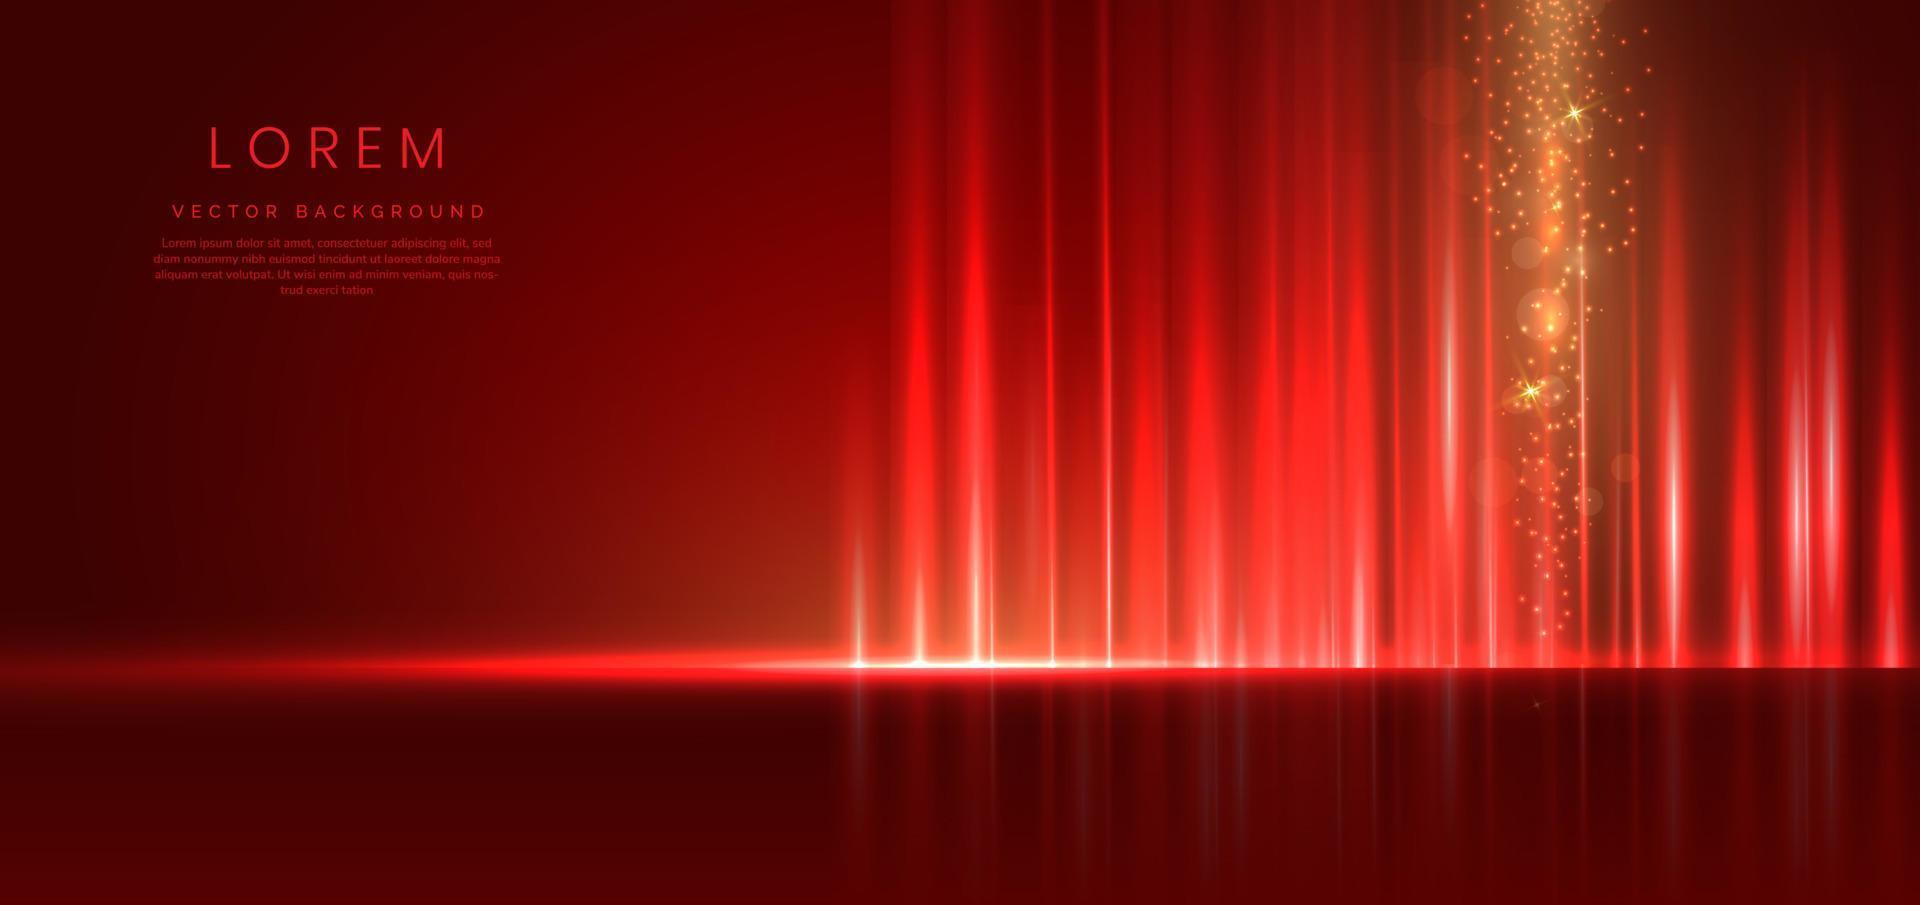 technologie abstraite futuriste bande rouge clair lignes verticales légères sur fond rouge avec effet d'éclairage doré scintillent. vecteur